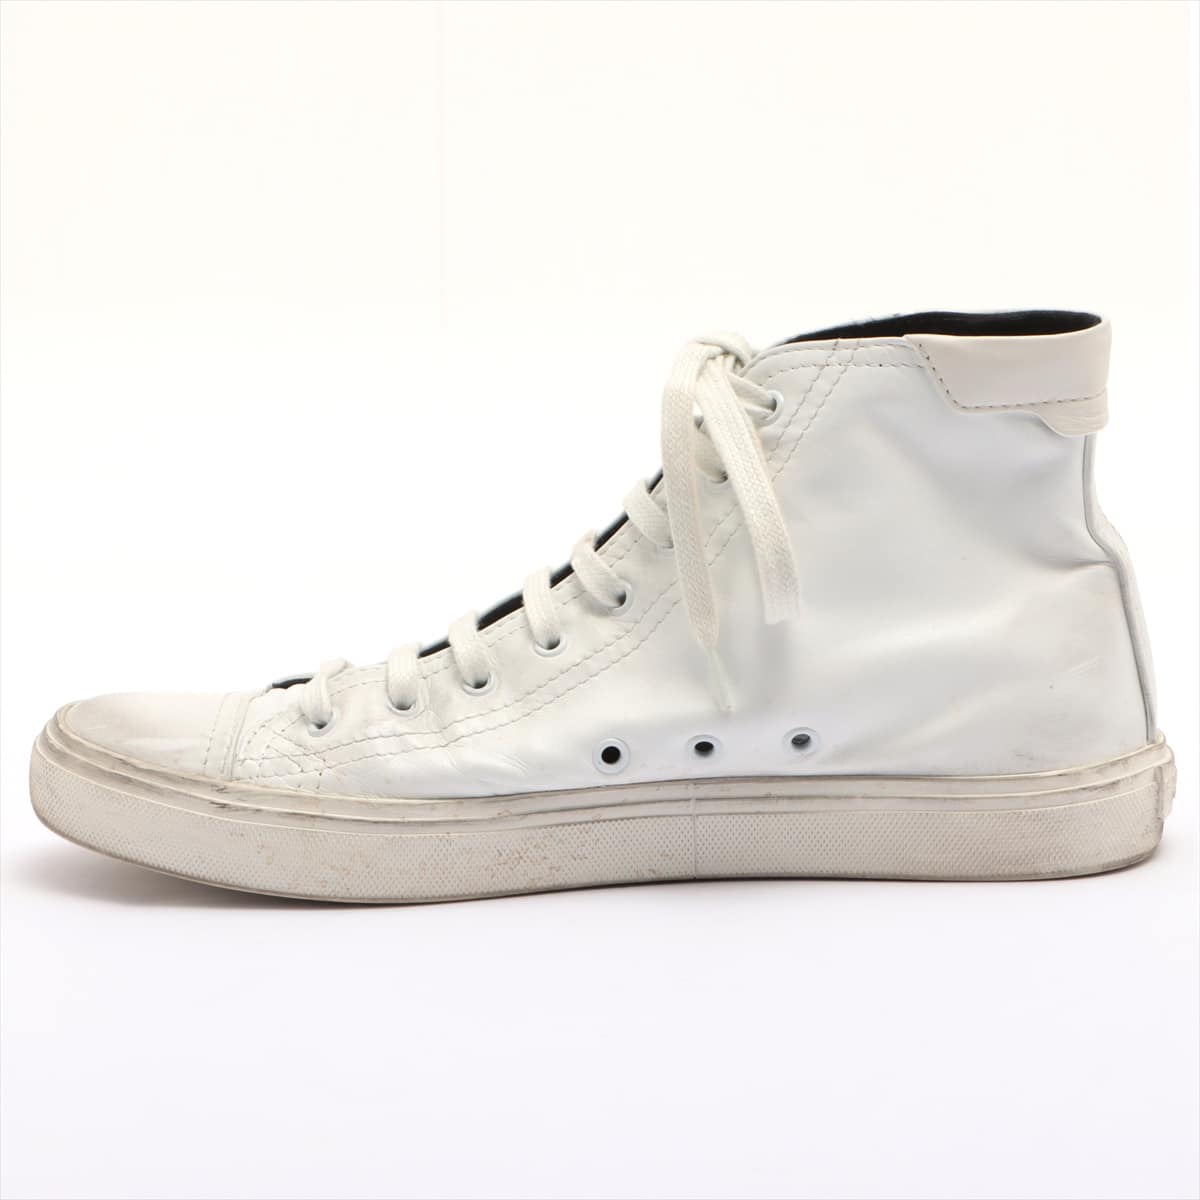 Saint Laurent Paris Leather High-top Sneakers 43 Men's White 513831